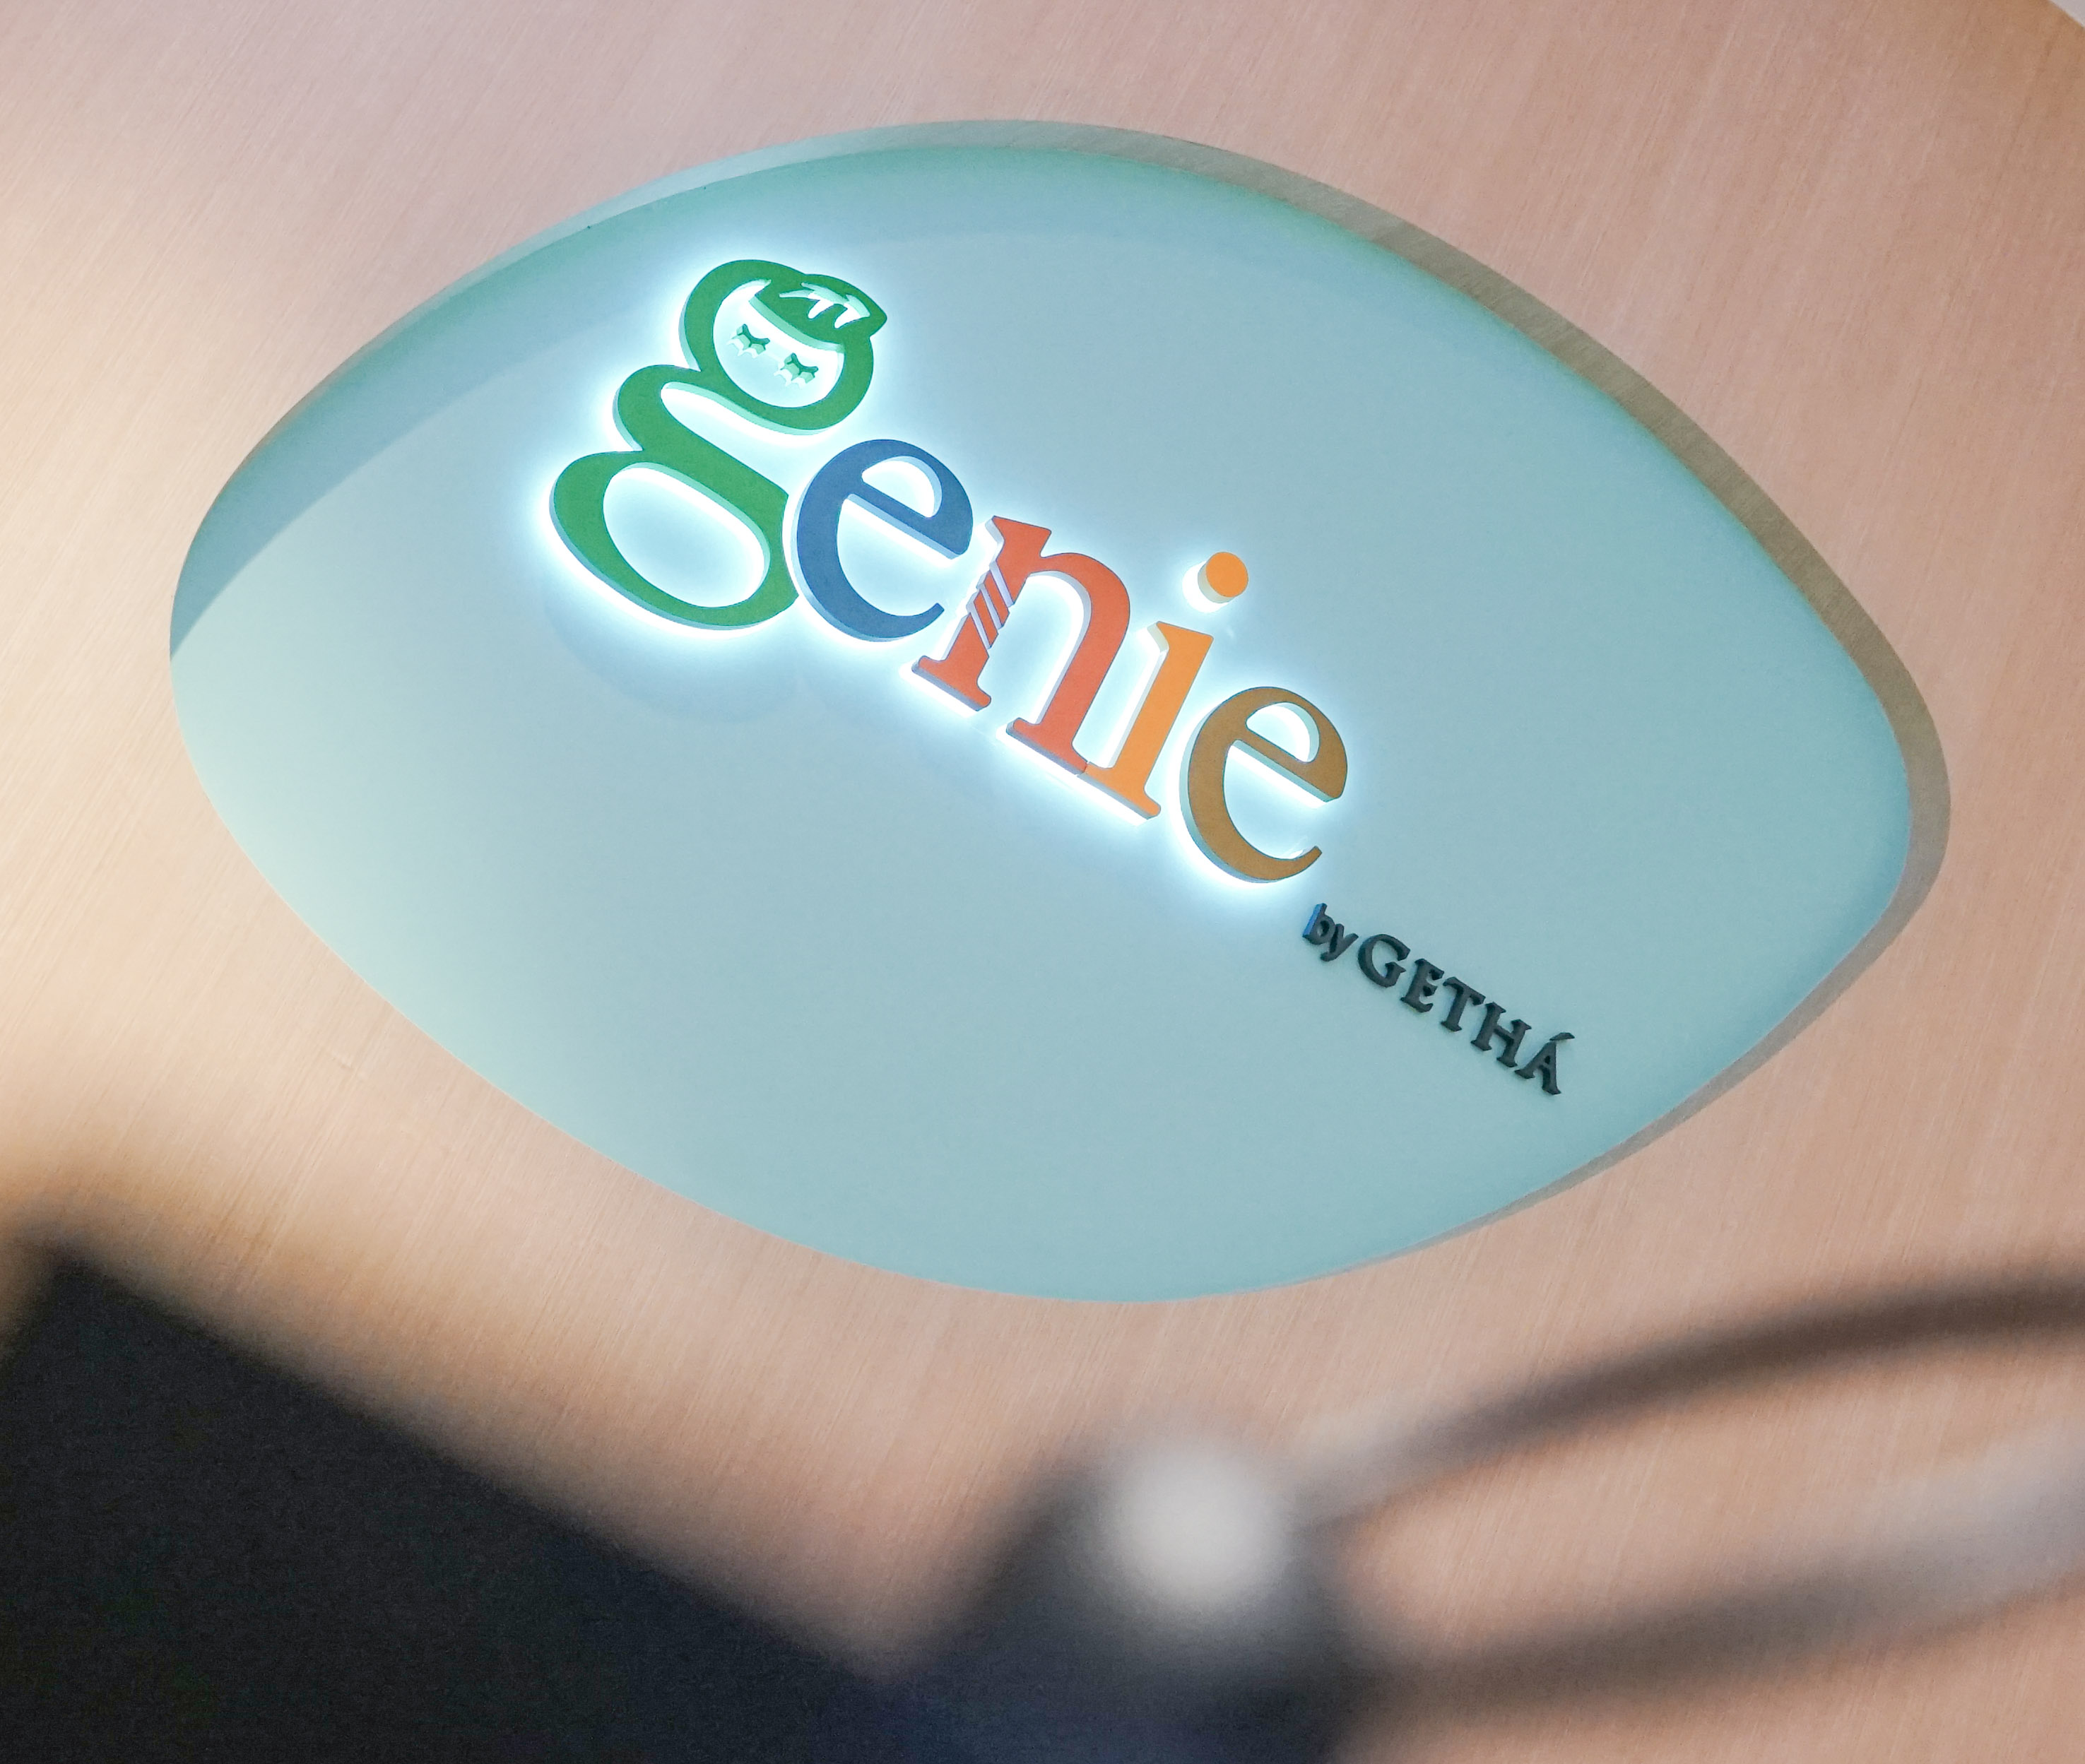 Genie by Getha